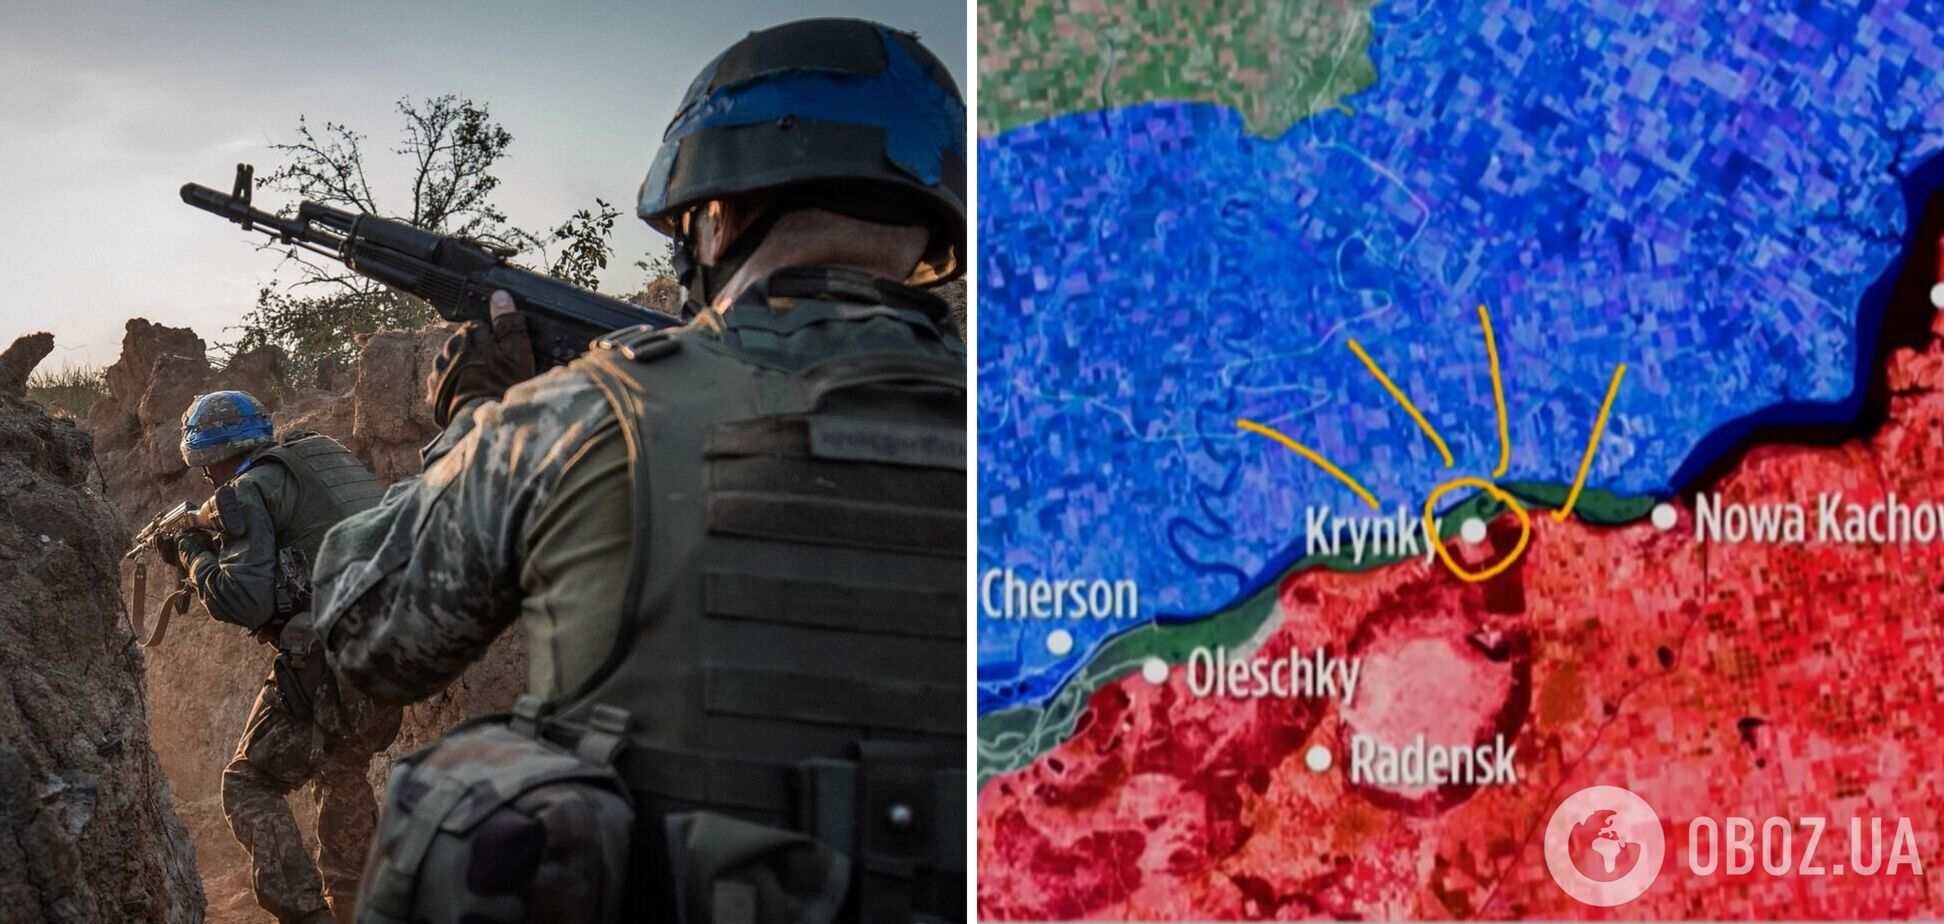 Плацдарм в Крынках стал 'ловушкой' для войск РФ: в Bild рассказали о потерях армии Путина